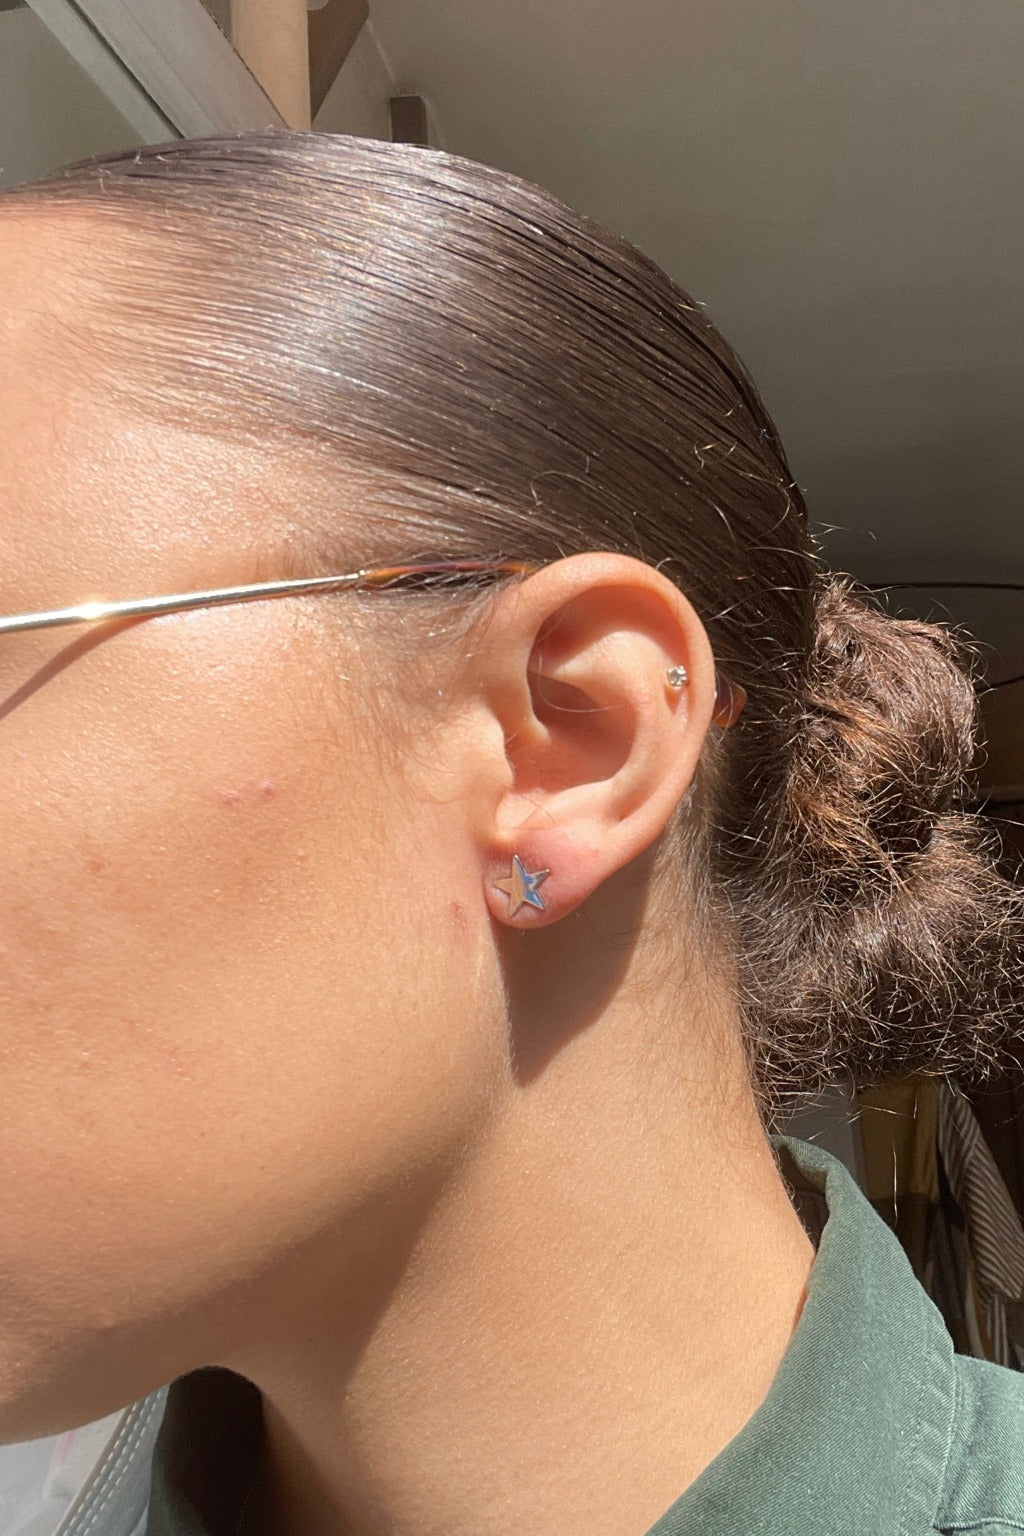 Star Stud Earrings - Silver